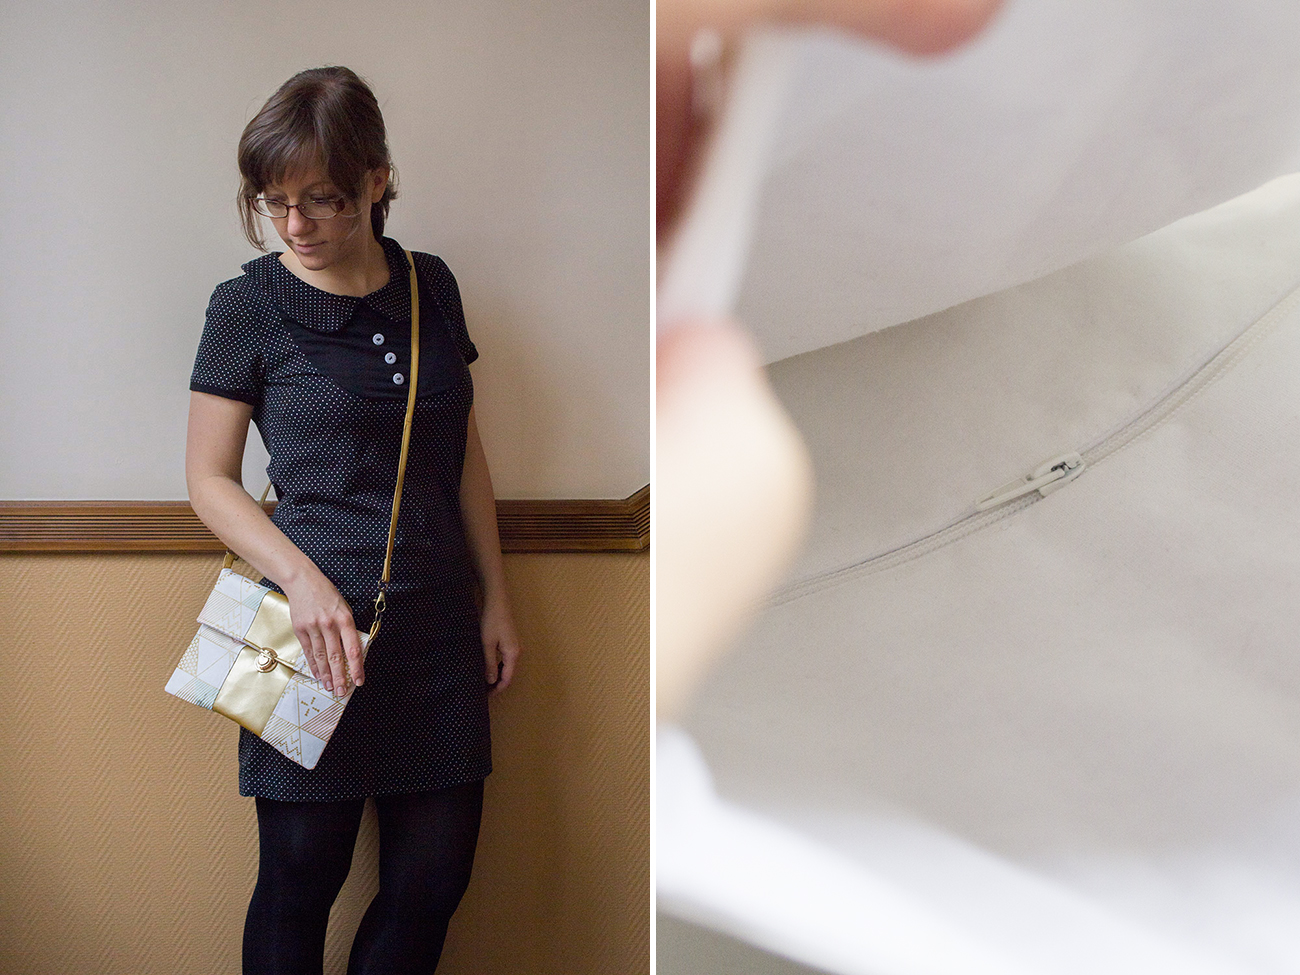 Nähanleitung: Handtasche "Mira" mit Reißverschluss-Innenfach nähen